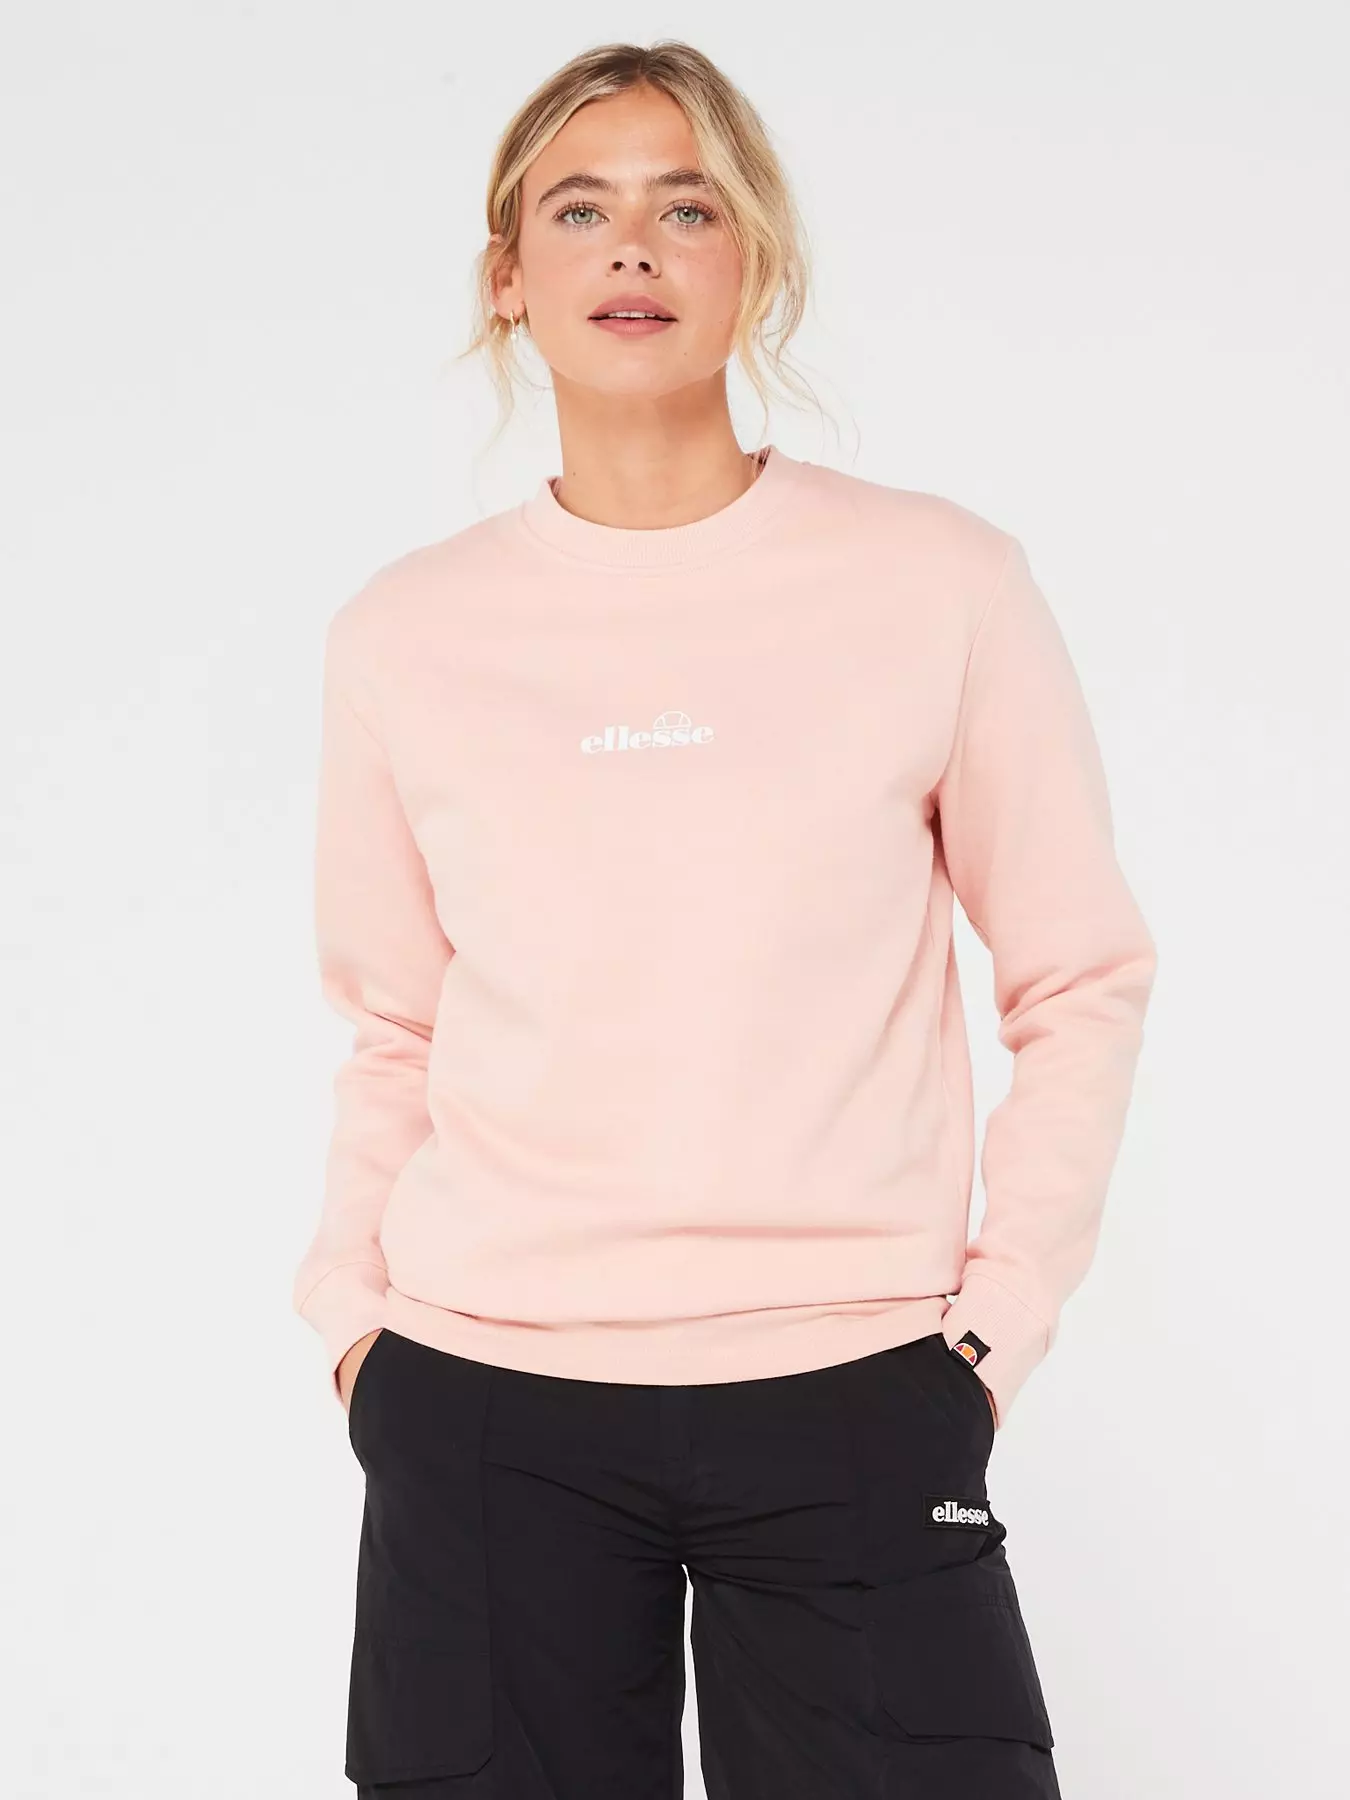 & Pink Sweatshirts Hoodies Women\'s